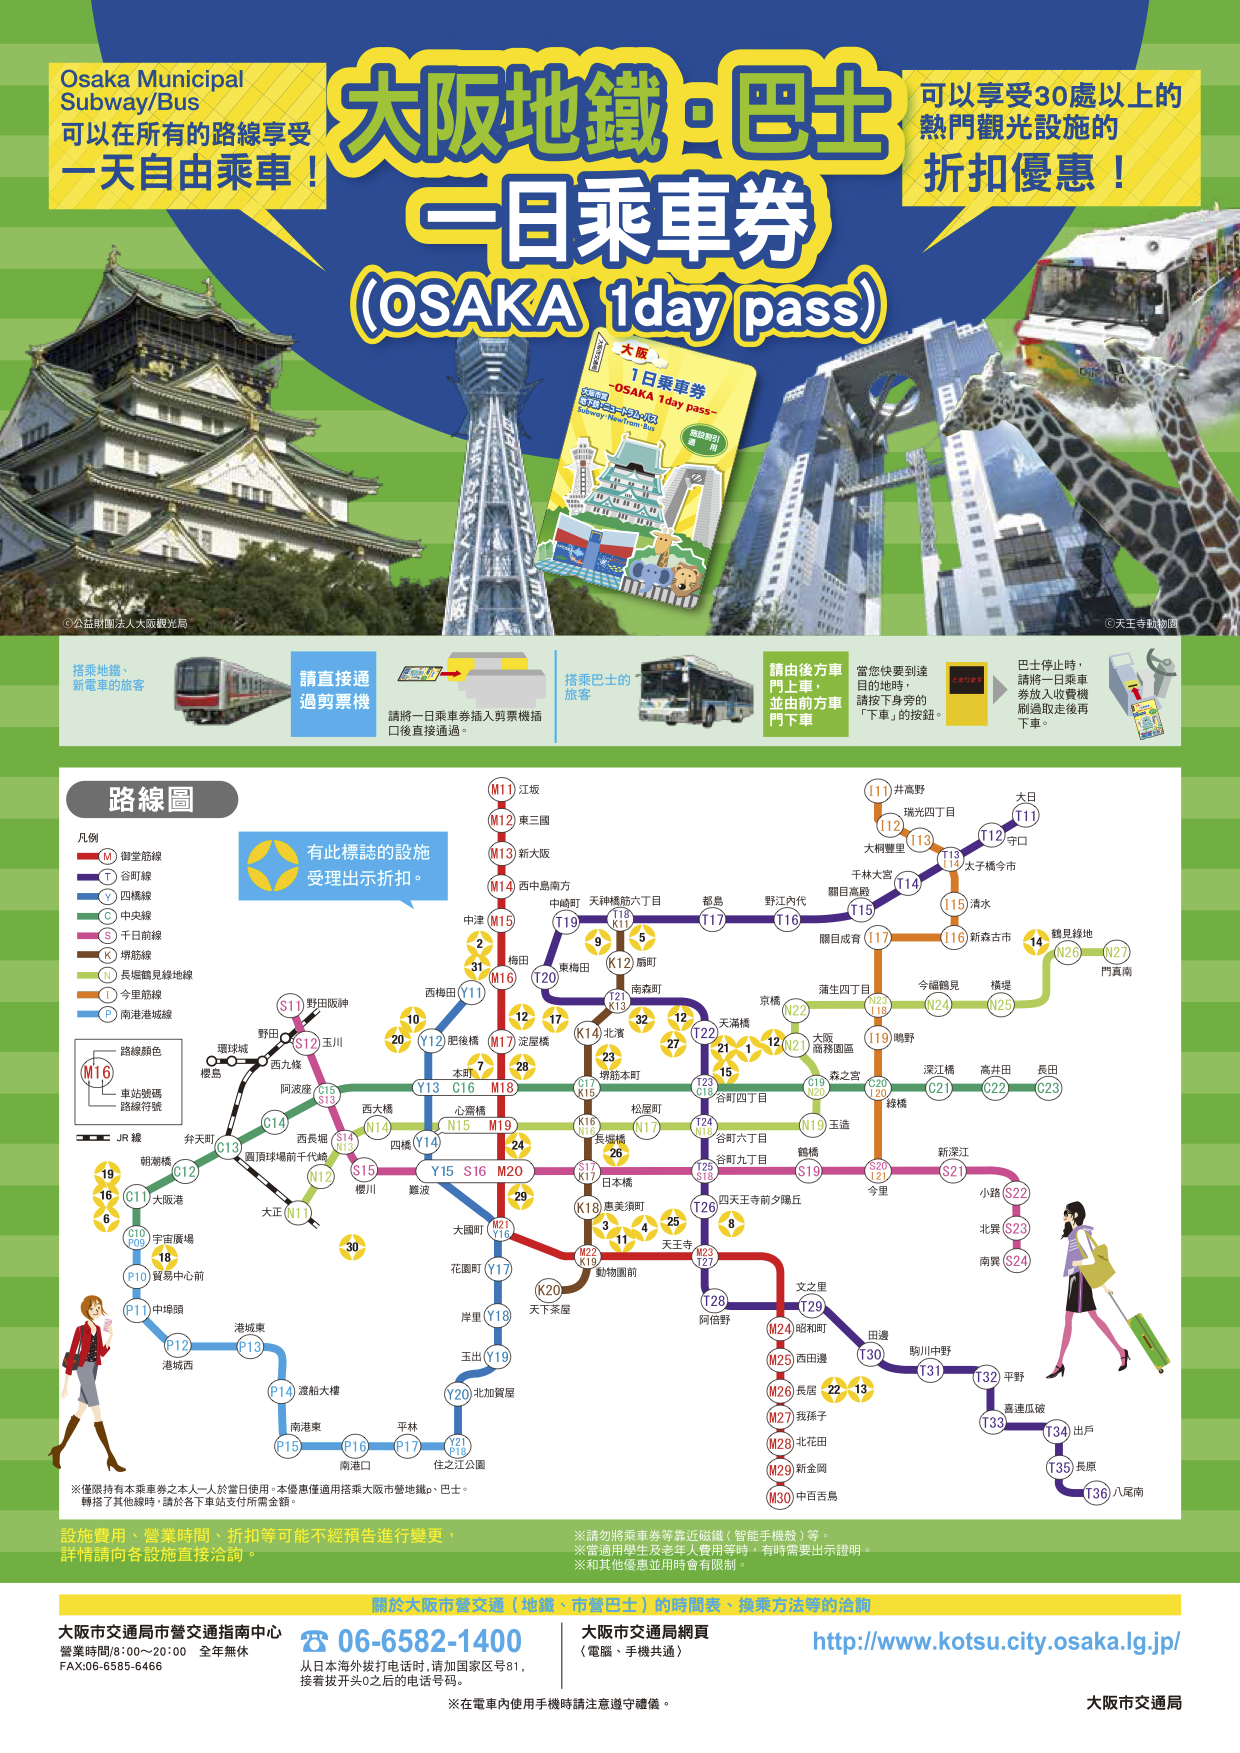 日本大阪交通｜外國人專屬大阪地鐵巴士一日券 、二日券~ 購買地點、使用方式、門票優惠資訊(大阪地下鐵1日券、Osaka Visitors’Ticket)